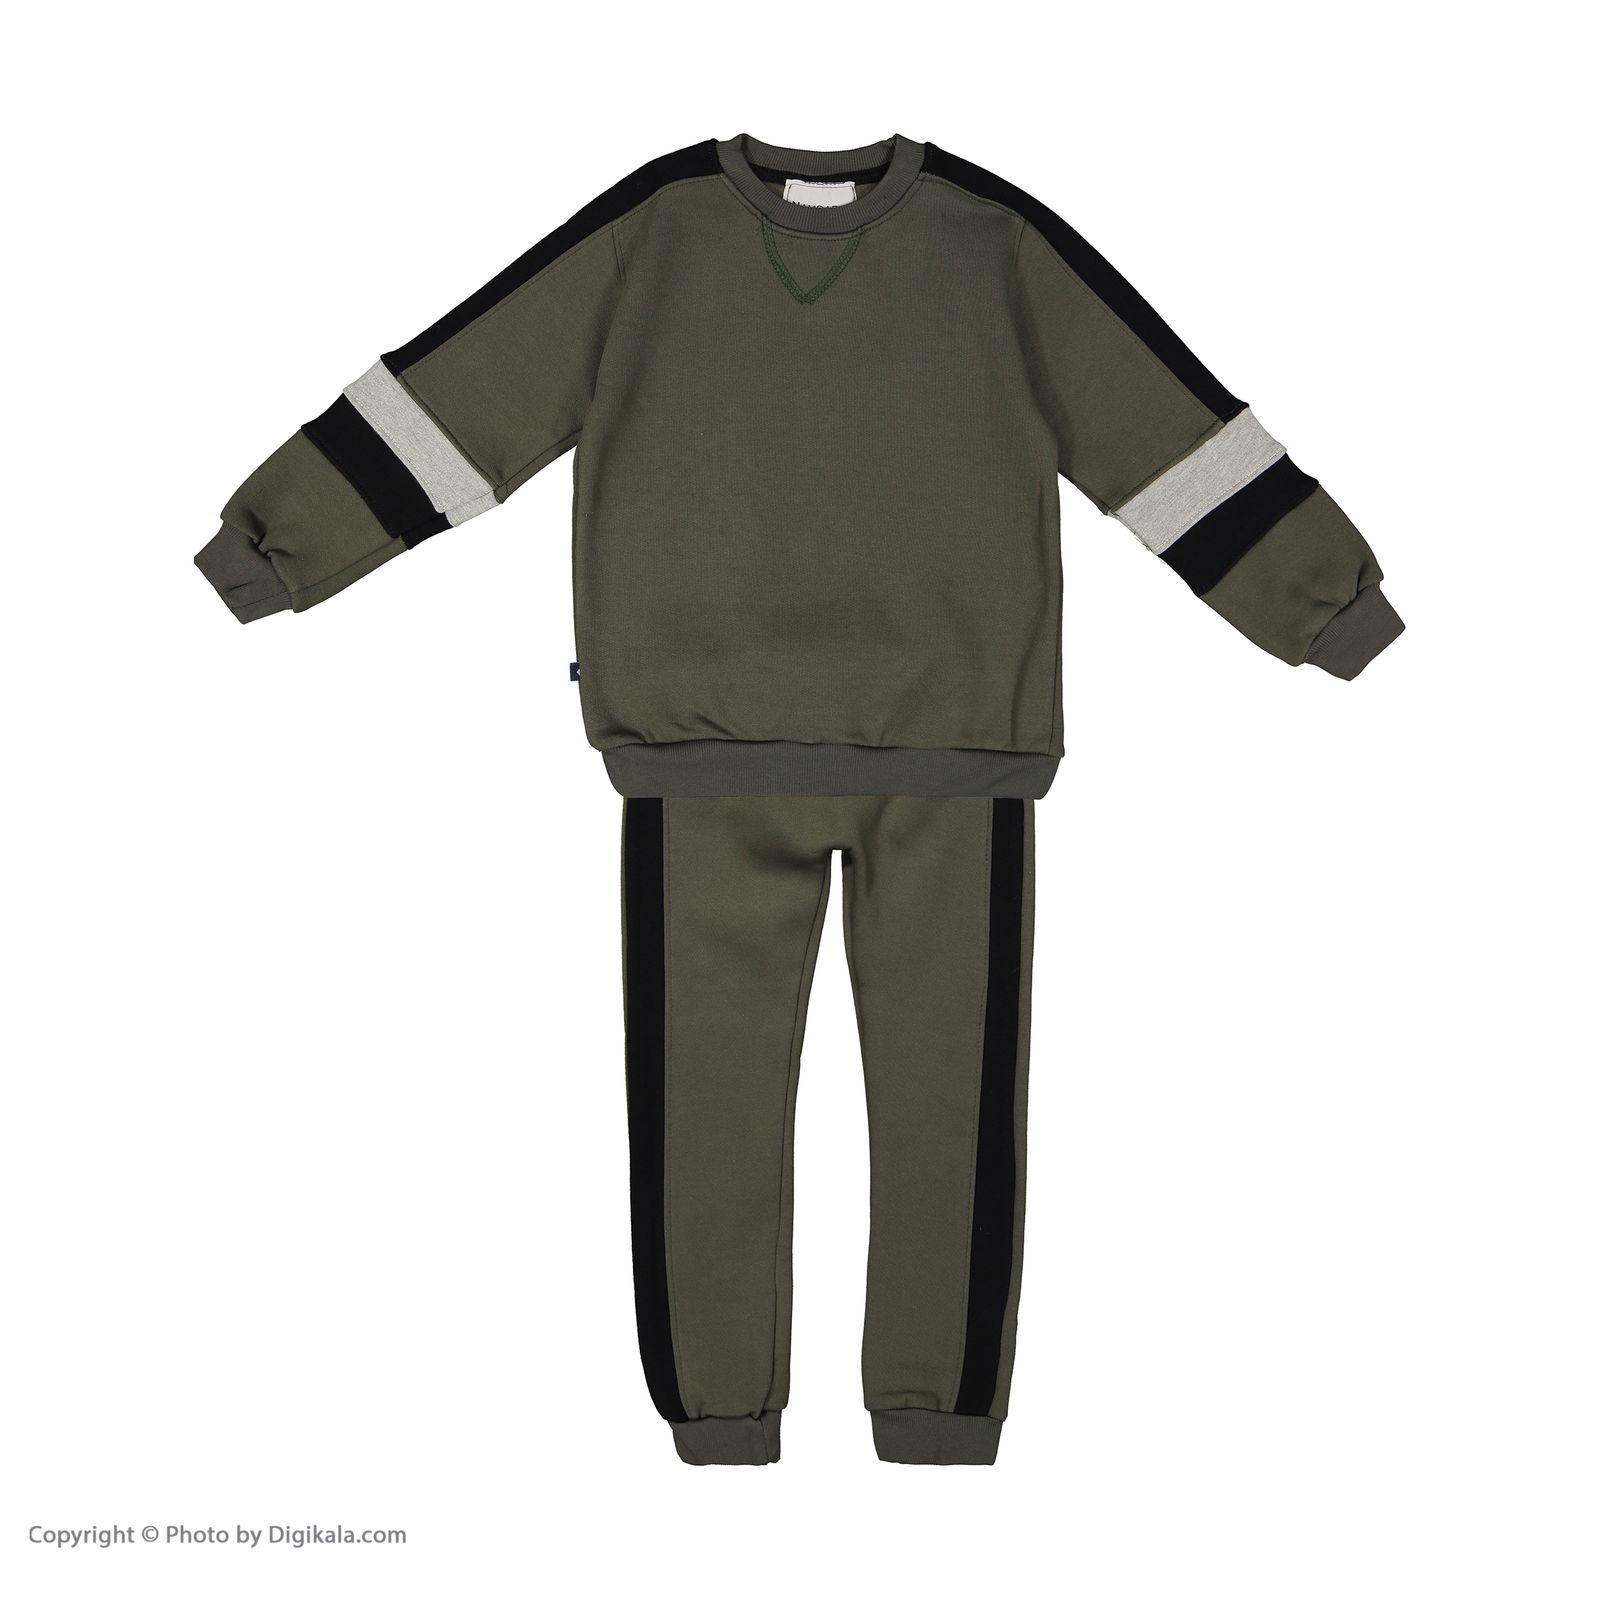 ست تی شرت و شلوار پسرانه نامدارز مدل 2021106-49 - سبز ارتشی - 2